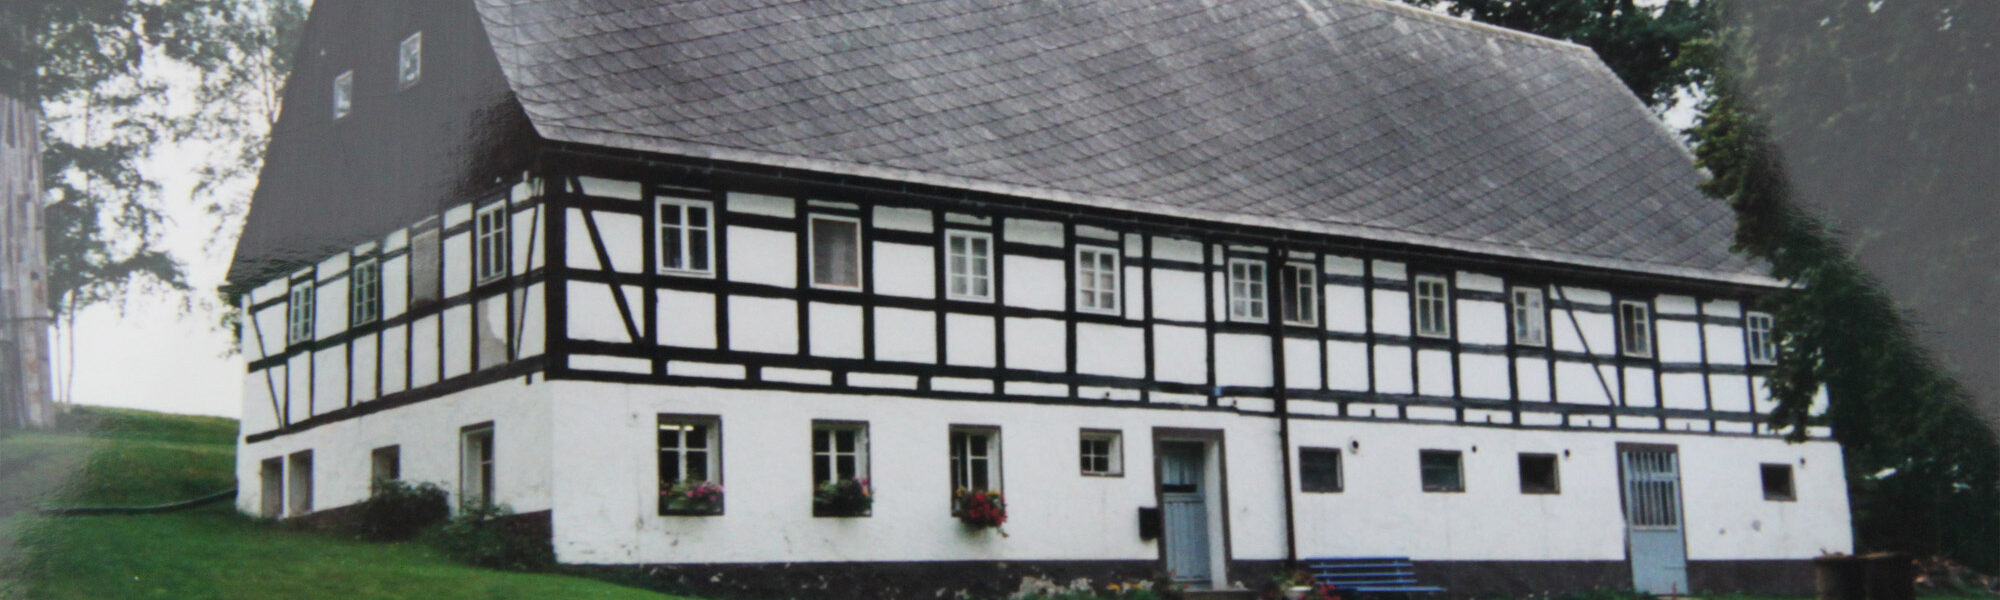 Friedebach - Dorp vol herinneringen